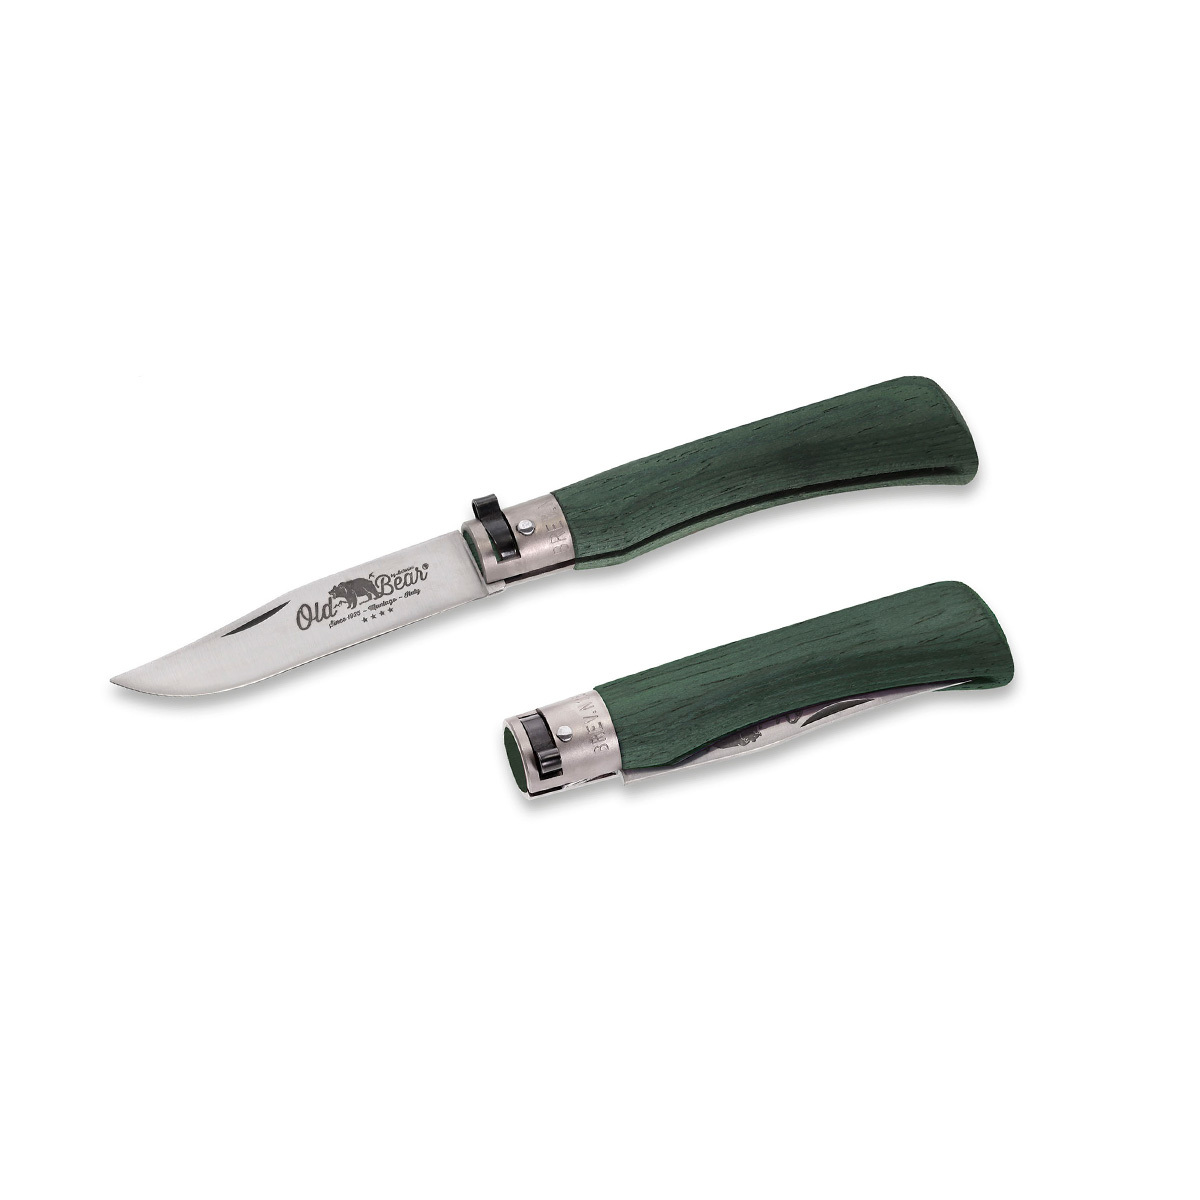 Складной нож Antonini Old Bear® Full Color XL, сталь 420, рукоять зеленая стабилизированная древесина от Ножиков